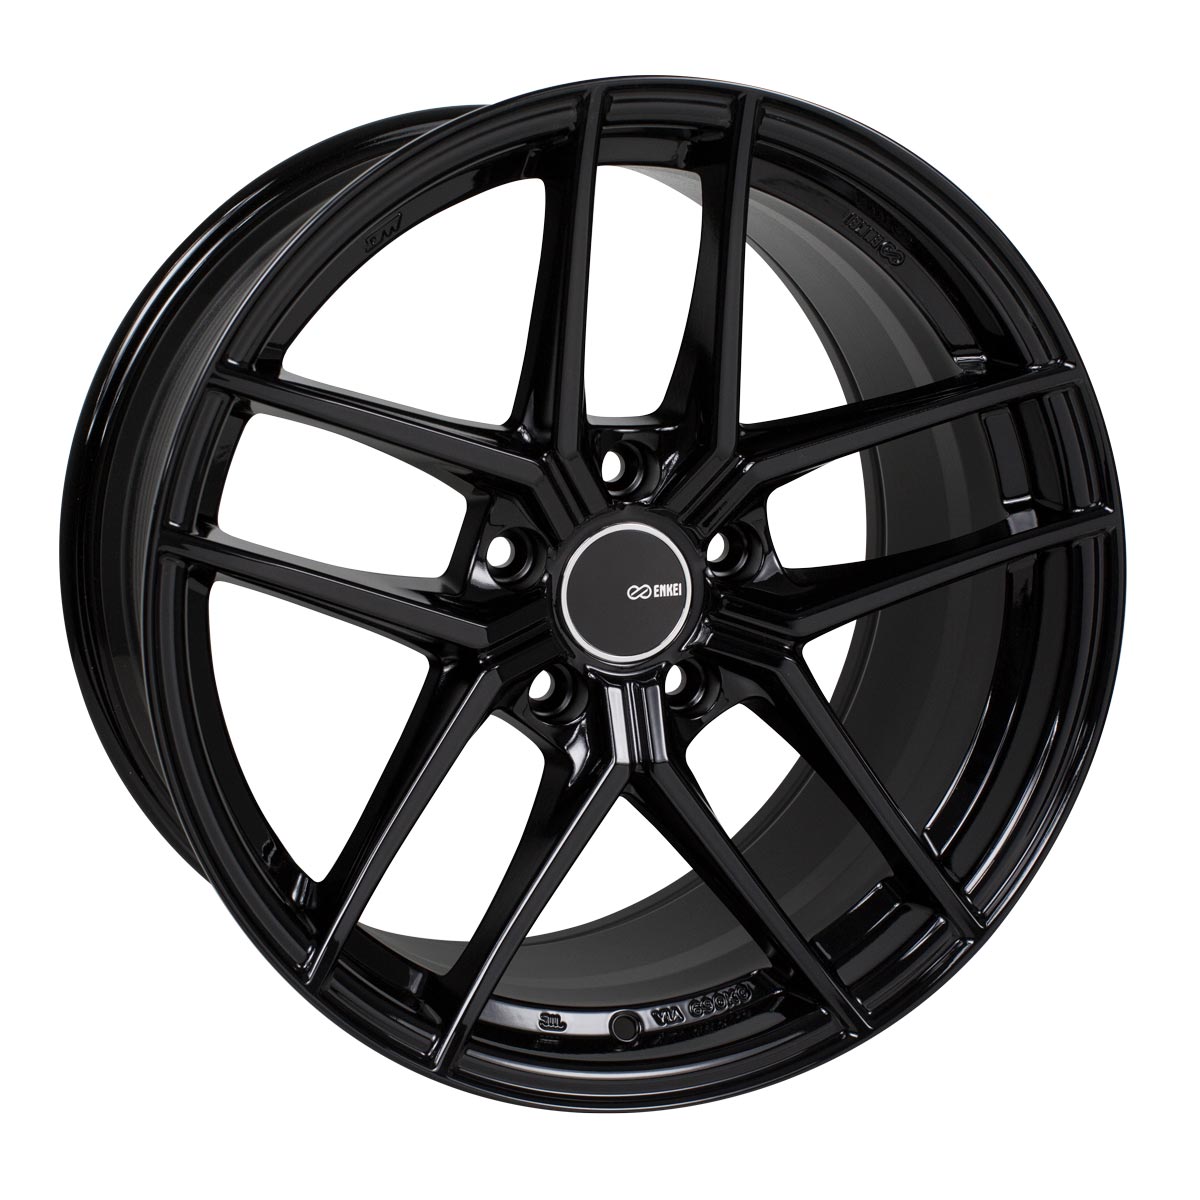 Enkei TY-5 Wheel Gloss Black 18x9.5 +30 5x114.3 498-895-6530BK